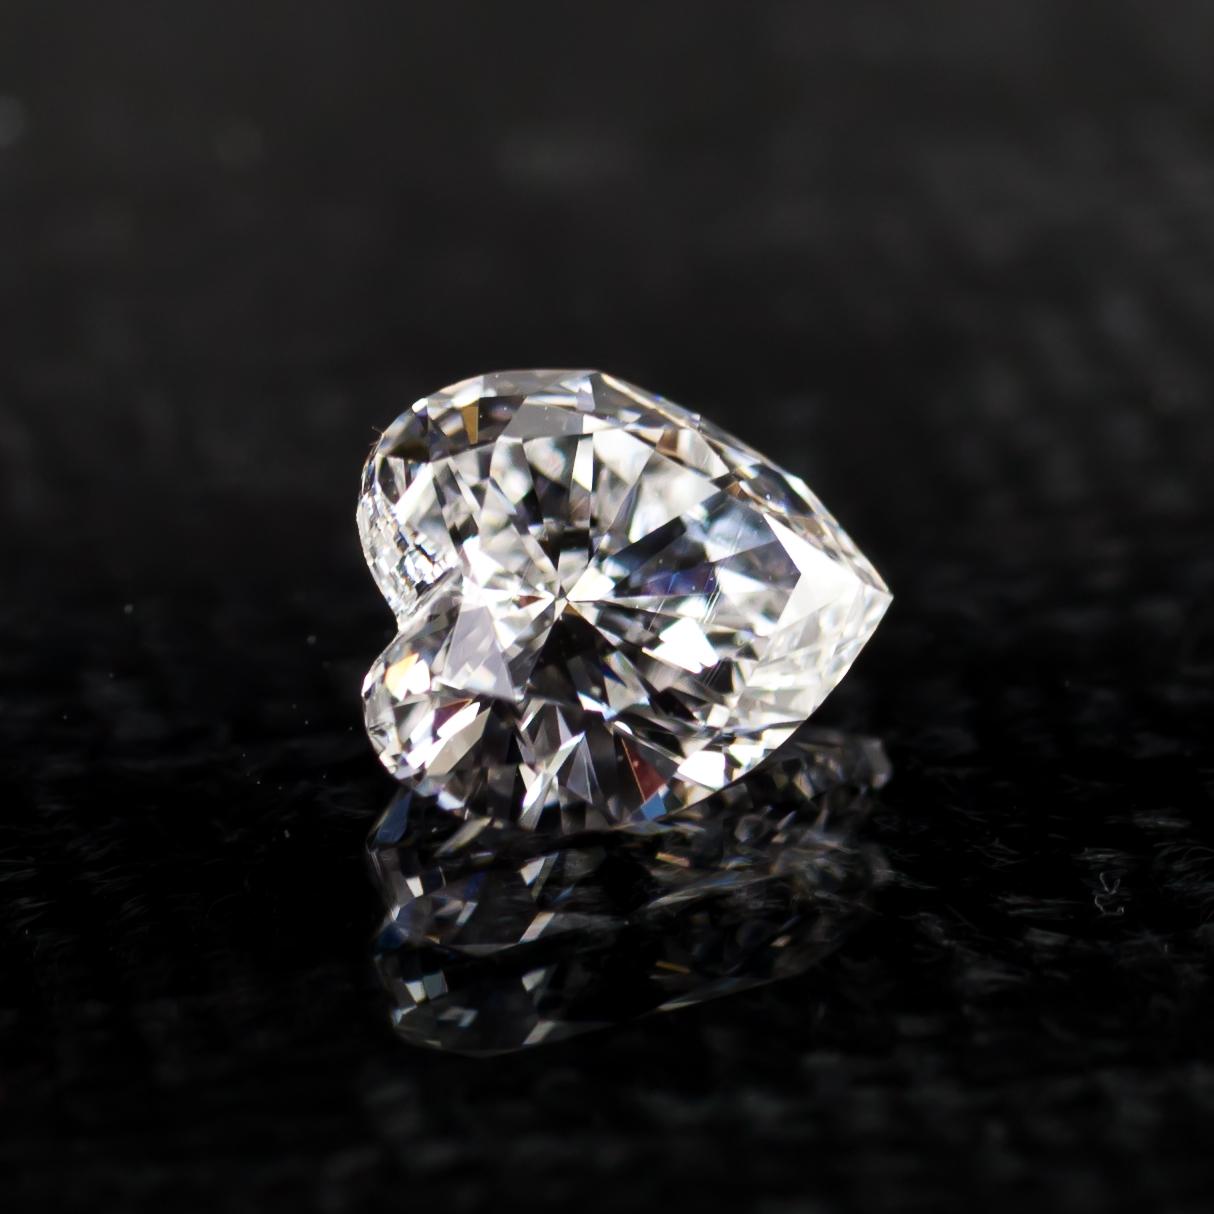 Informations générales sur le diamant
Taille du diamant : Brilliante en cœur
Dimensions : 6.86  x  6.32  -  3.52 mm
Numéro de rapport GIA : 2183448129

Résultats de la classification des diamants
Poids en carats : 1,01
Grade de couleur : F
Niveau de